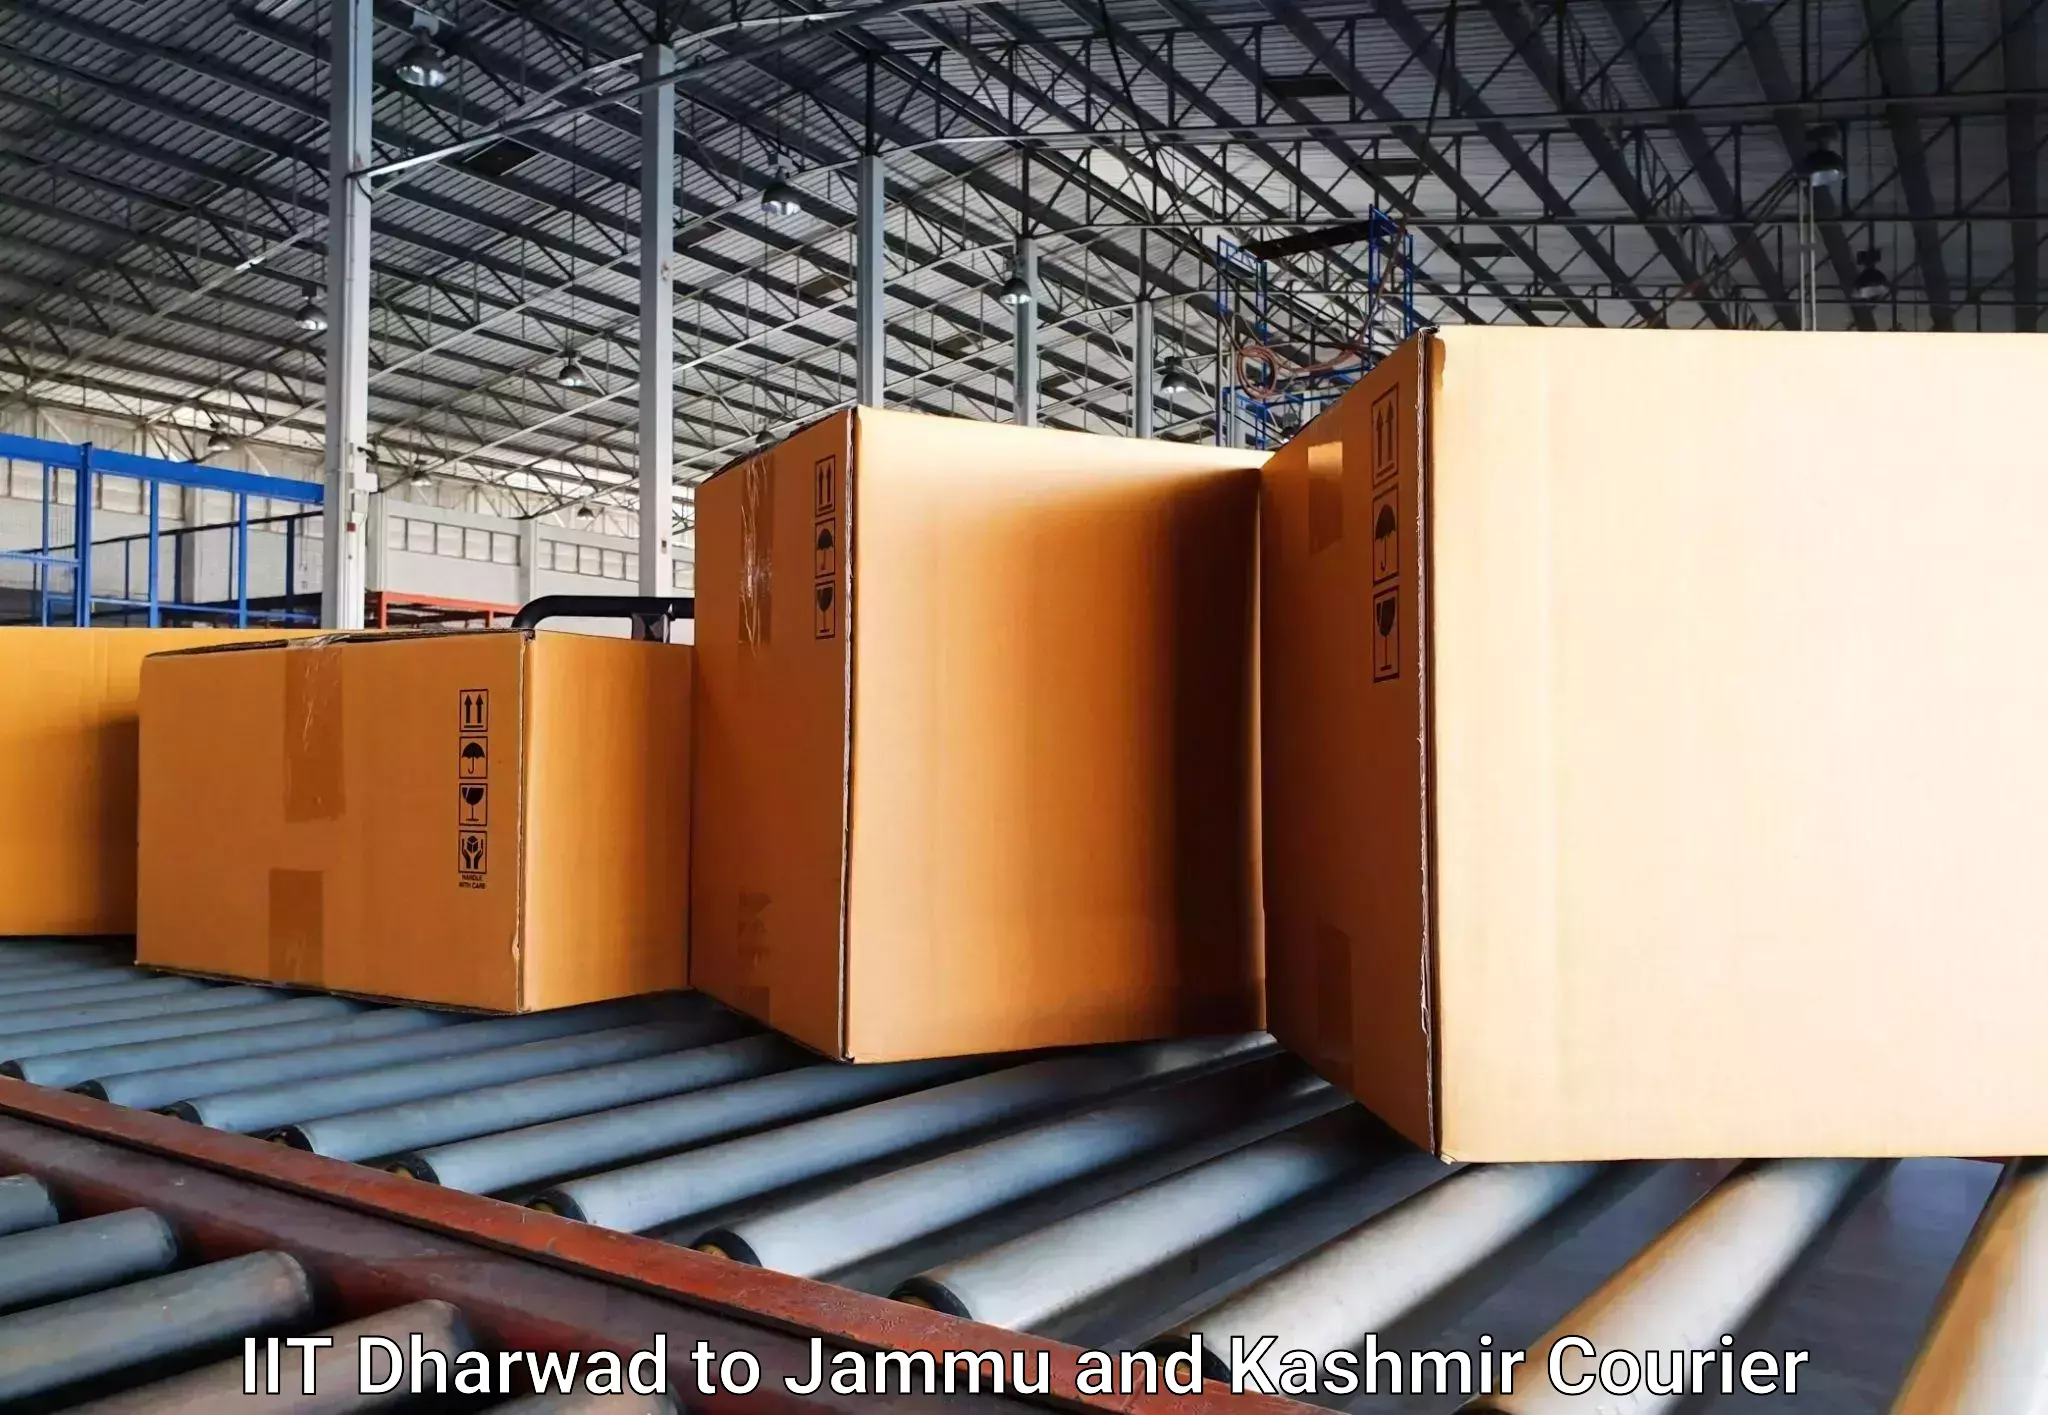 Luggage delivery estimate IIT Dharwad to Bandipur